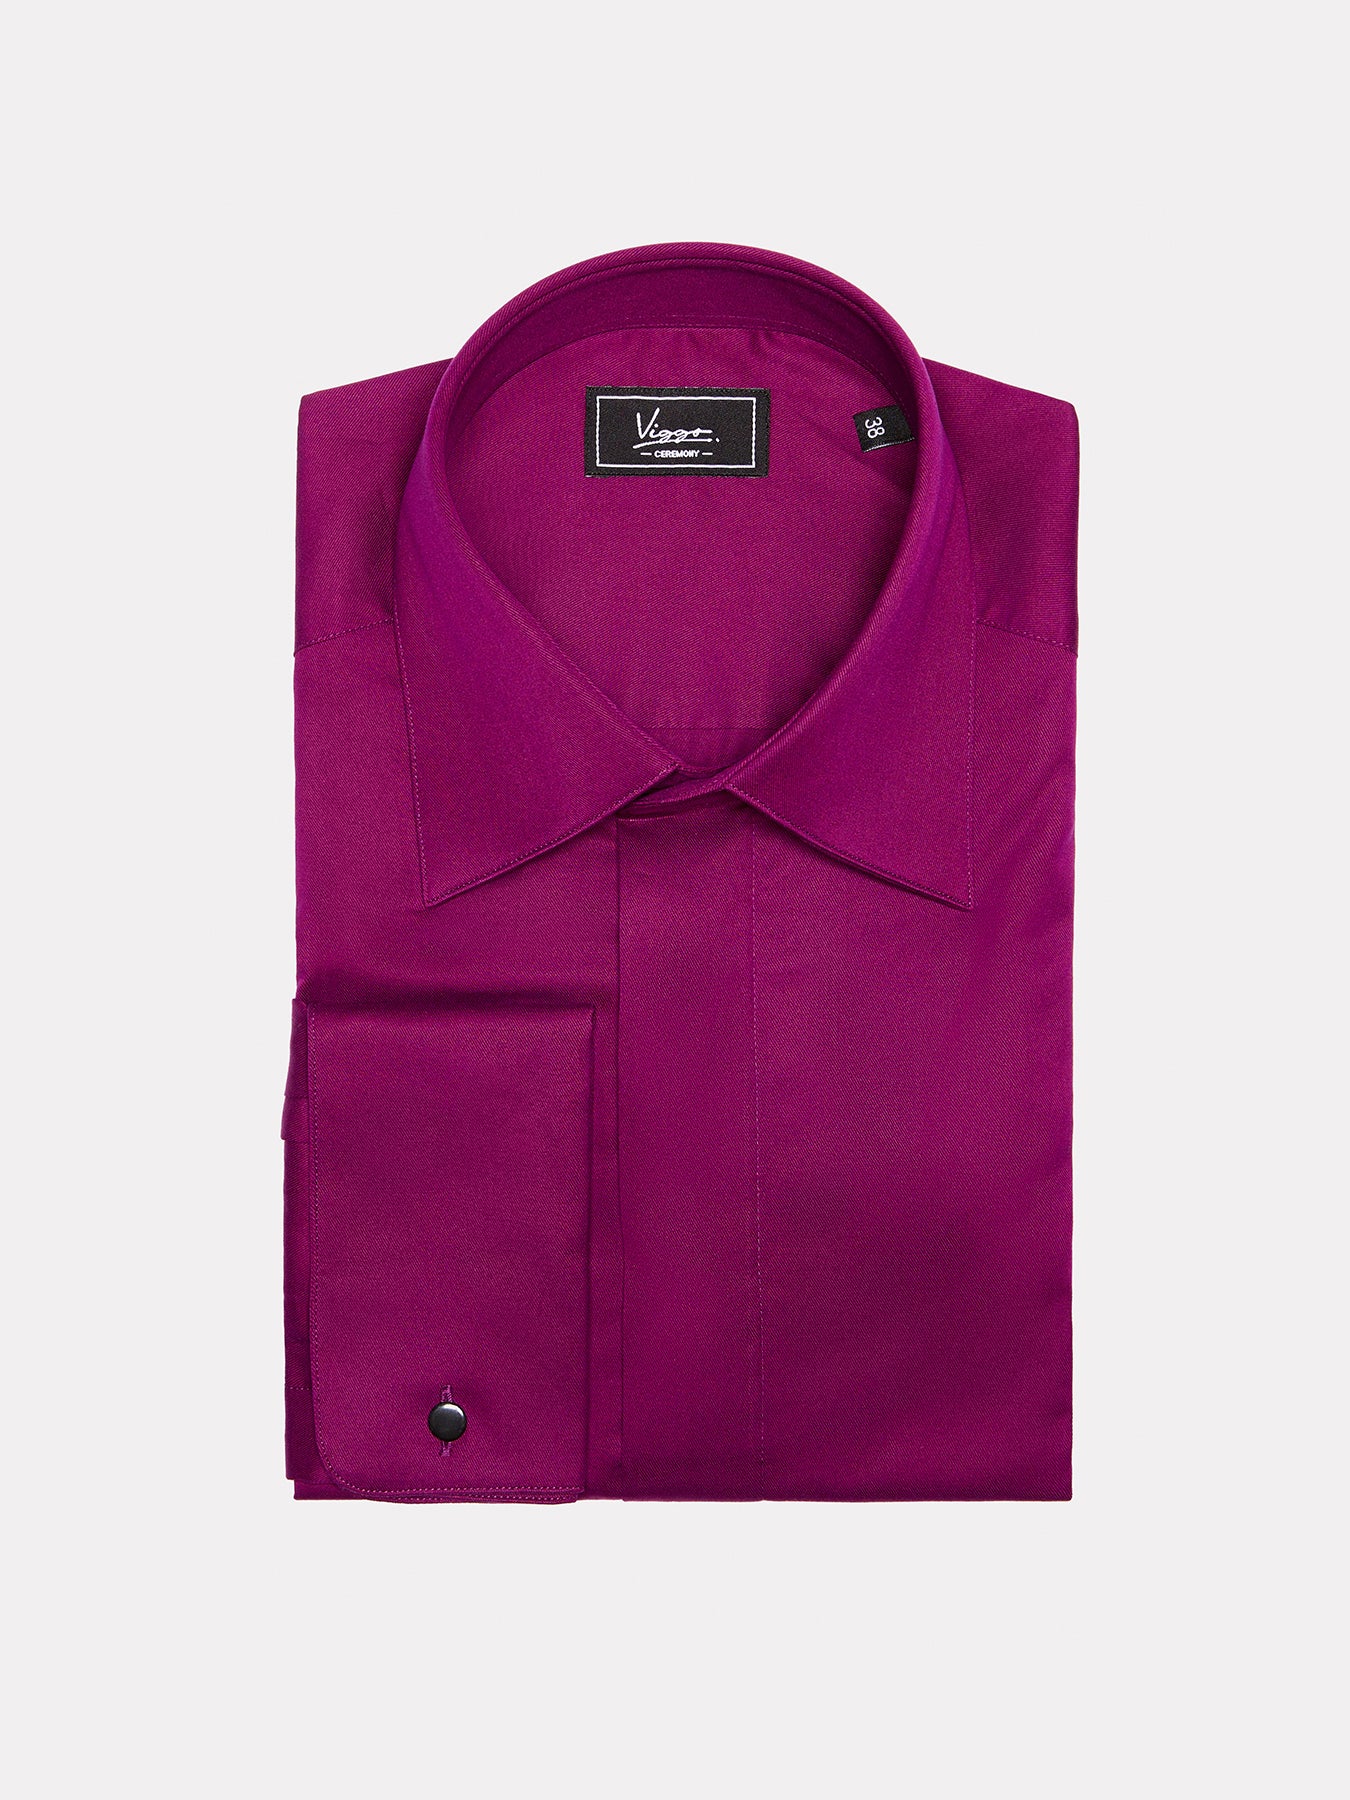 Purple shirt with hidden buttons